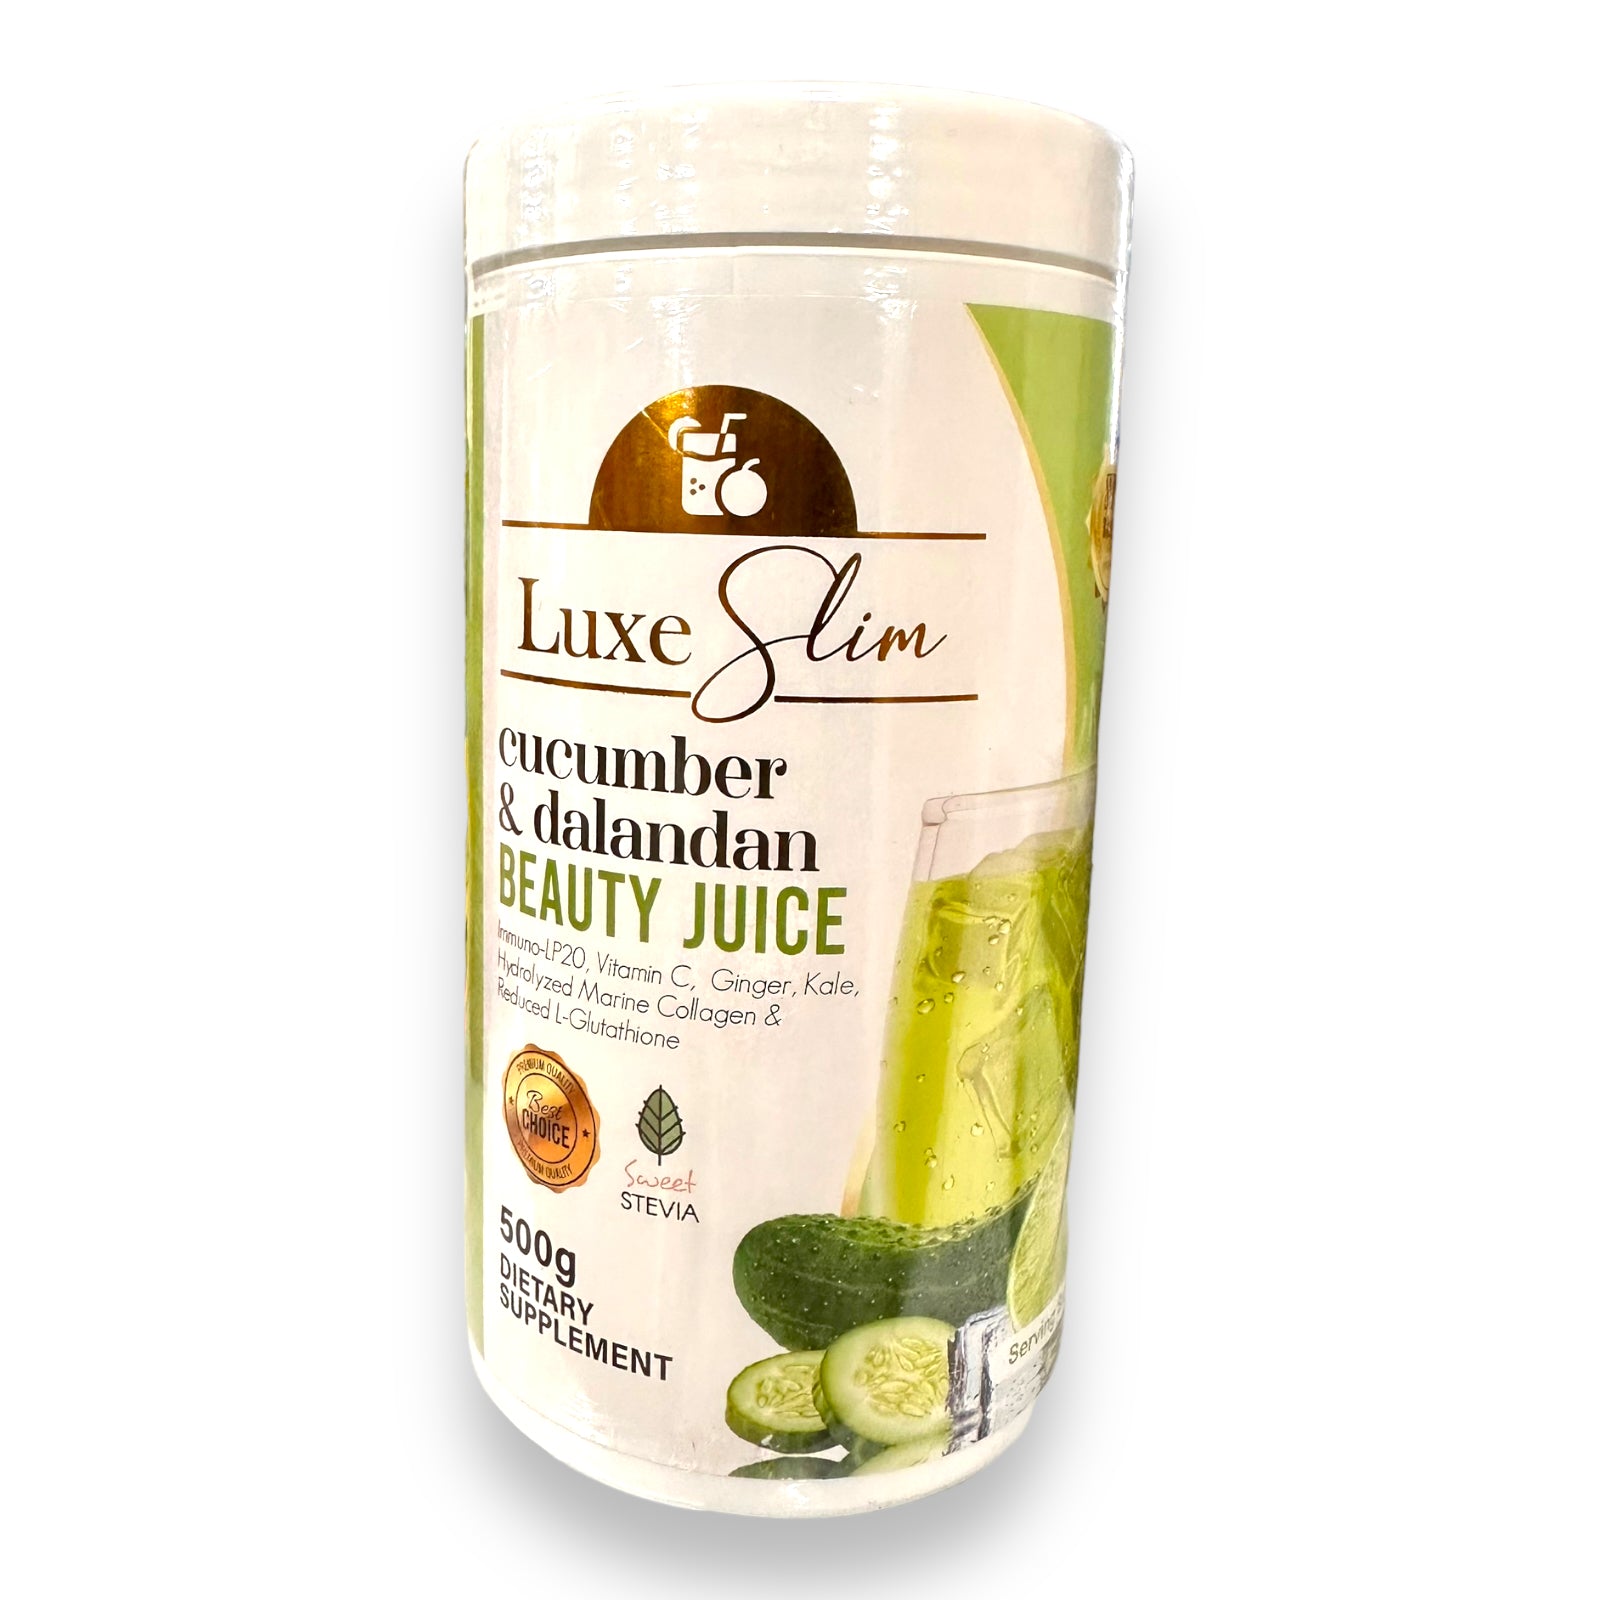 Luxe Slim - Cucumber & Dalandan Beauty Juice - HALF KILO Canister 500g